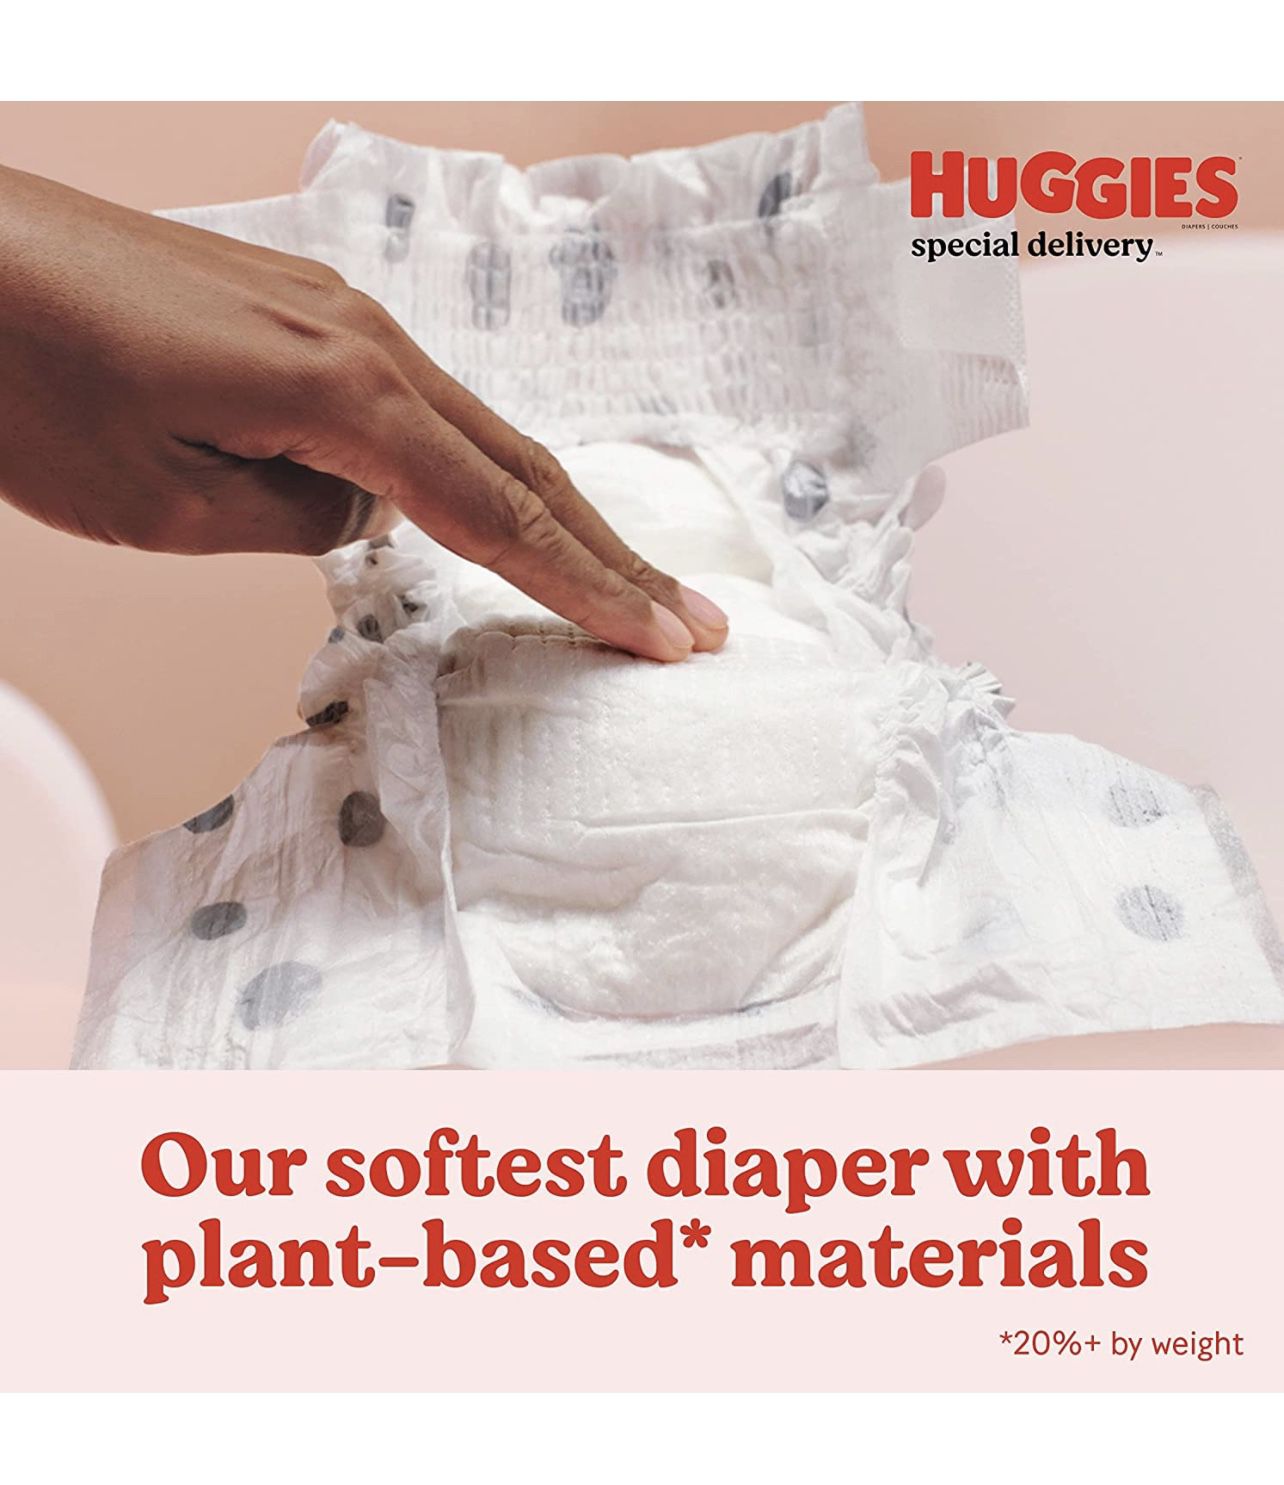 Huggies Hyper allergenic Baby Diapers Sz. Newborn